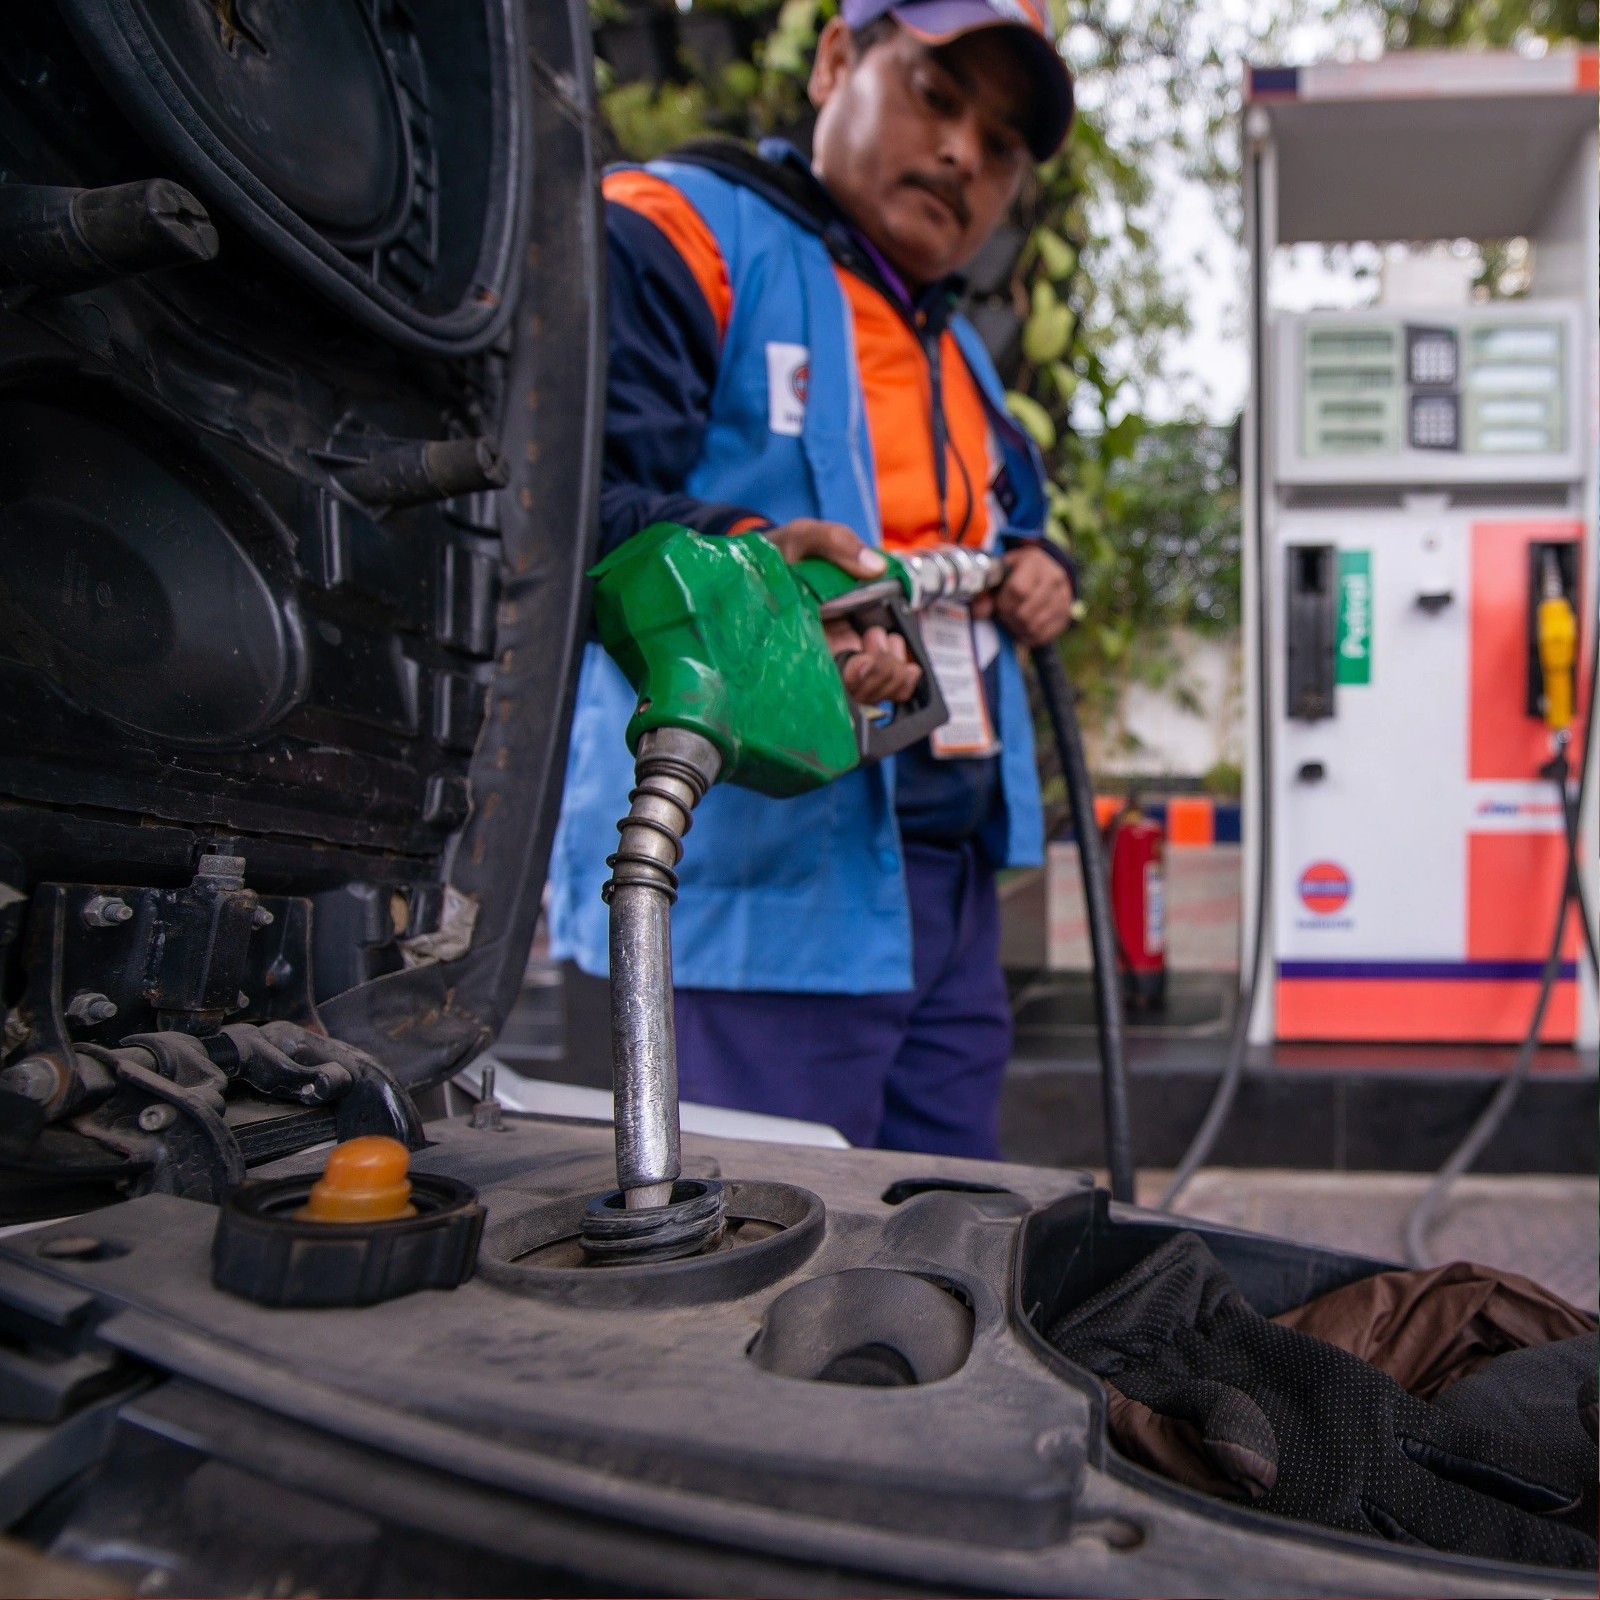 Petrol-Diesel Price: ਹਰਿਆਣਾ ਨੇ 12 ਰੁਪਏ ਘਟਾਈਆਂ ਪੈਟਰੋਲ-ਡੀਜ਼ਲ ਕੀਮਤਾਂ